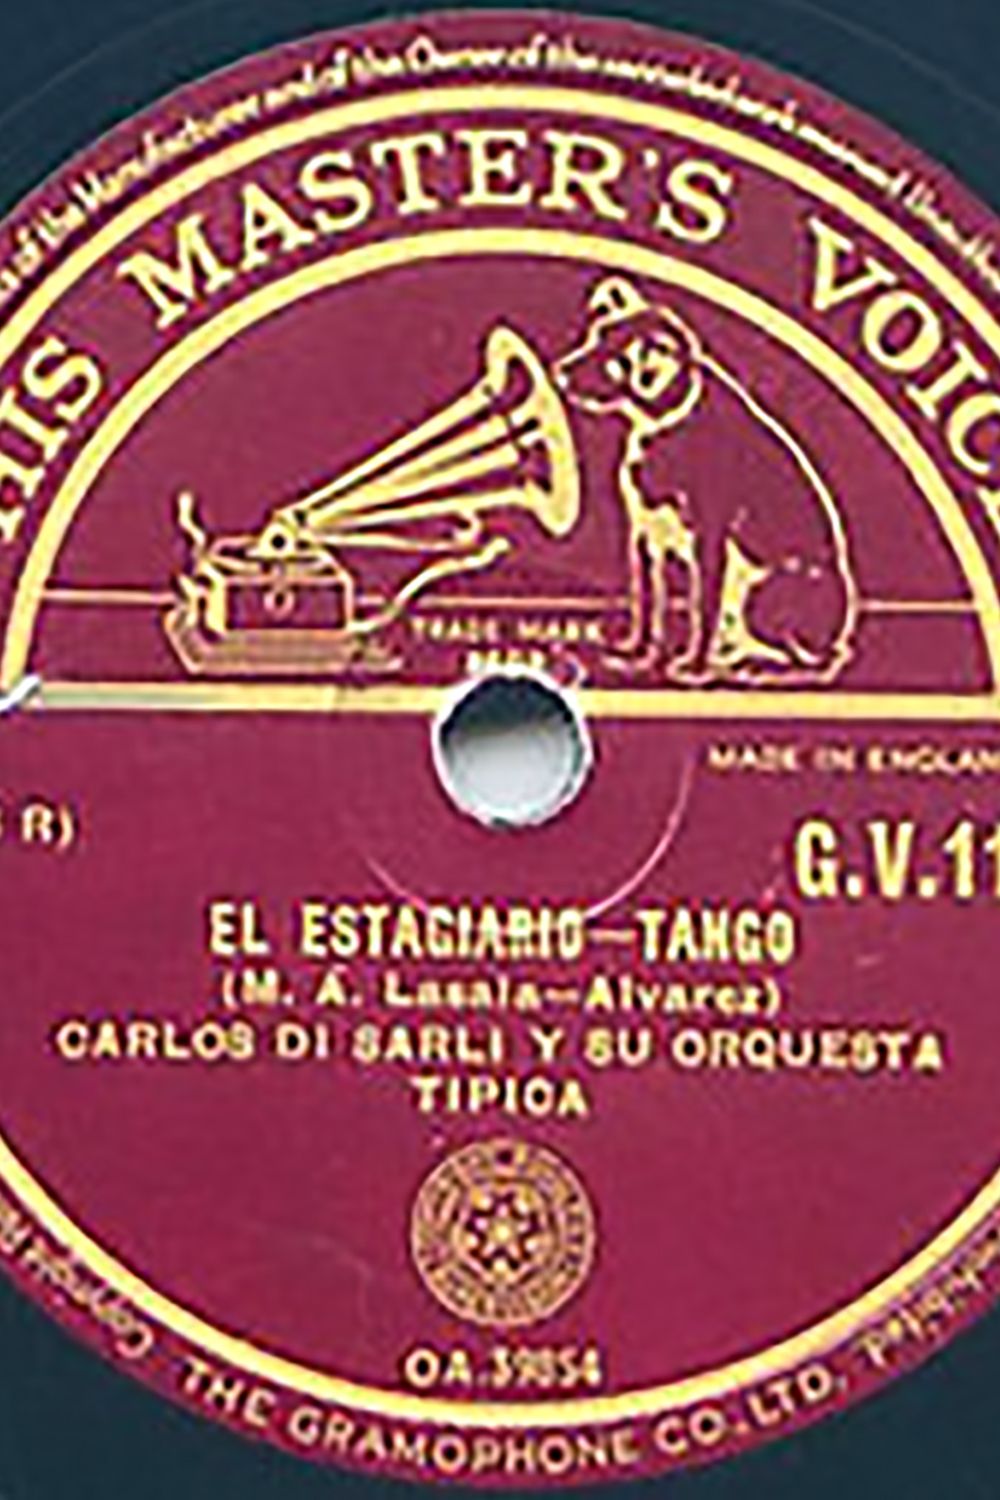 "El estagiario", Argentine Tango vinyl disc.